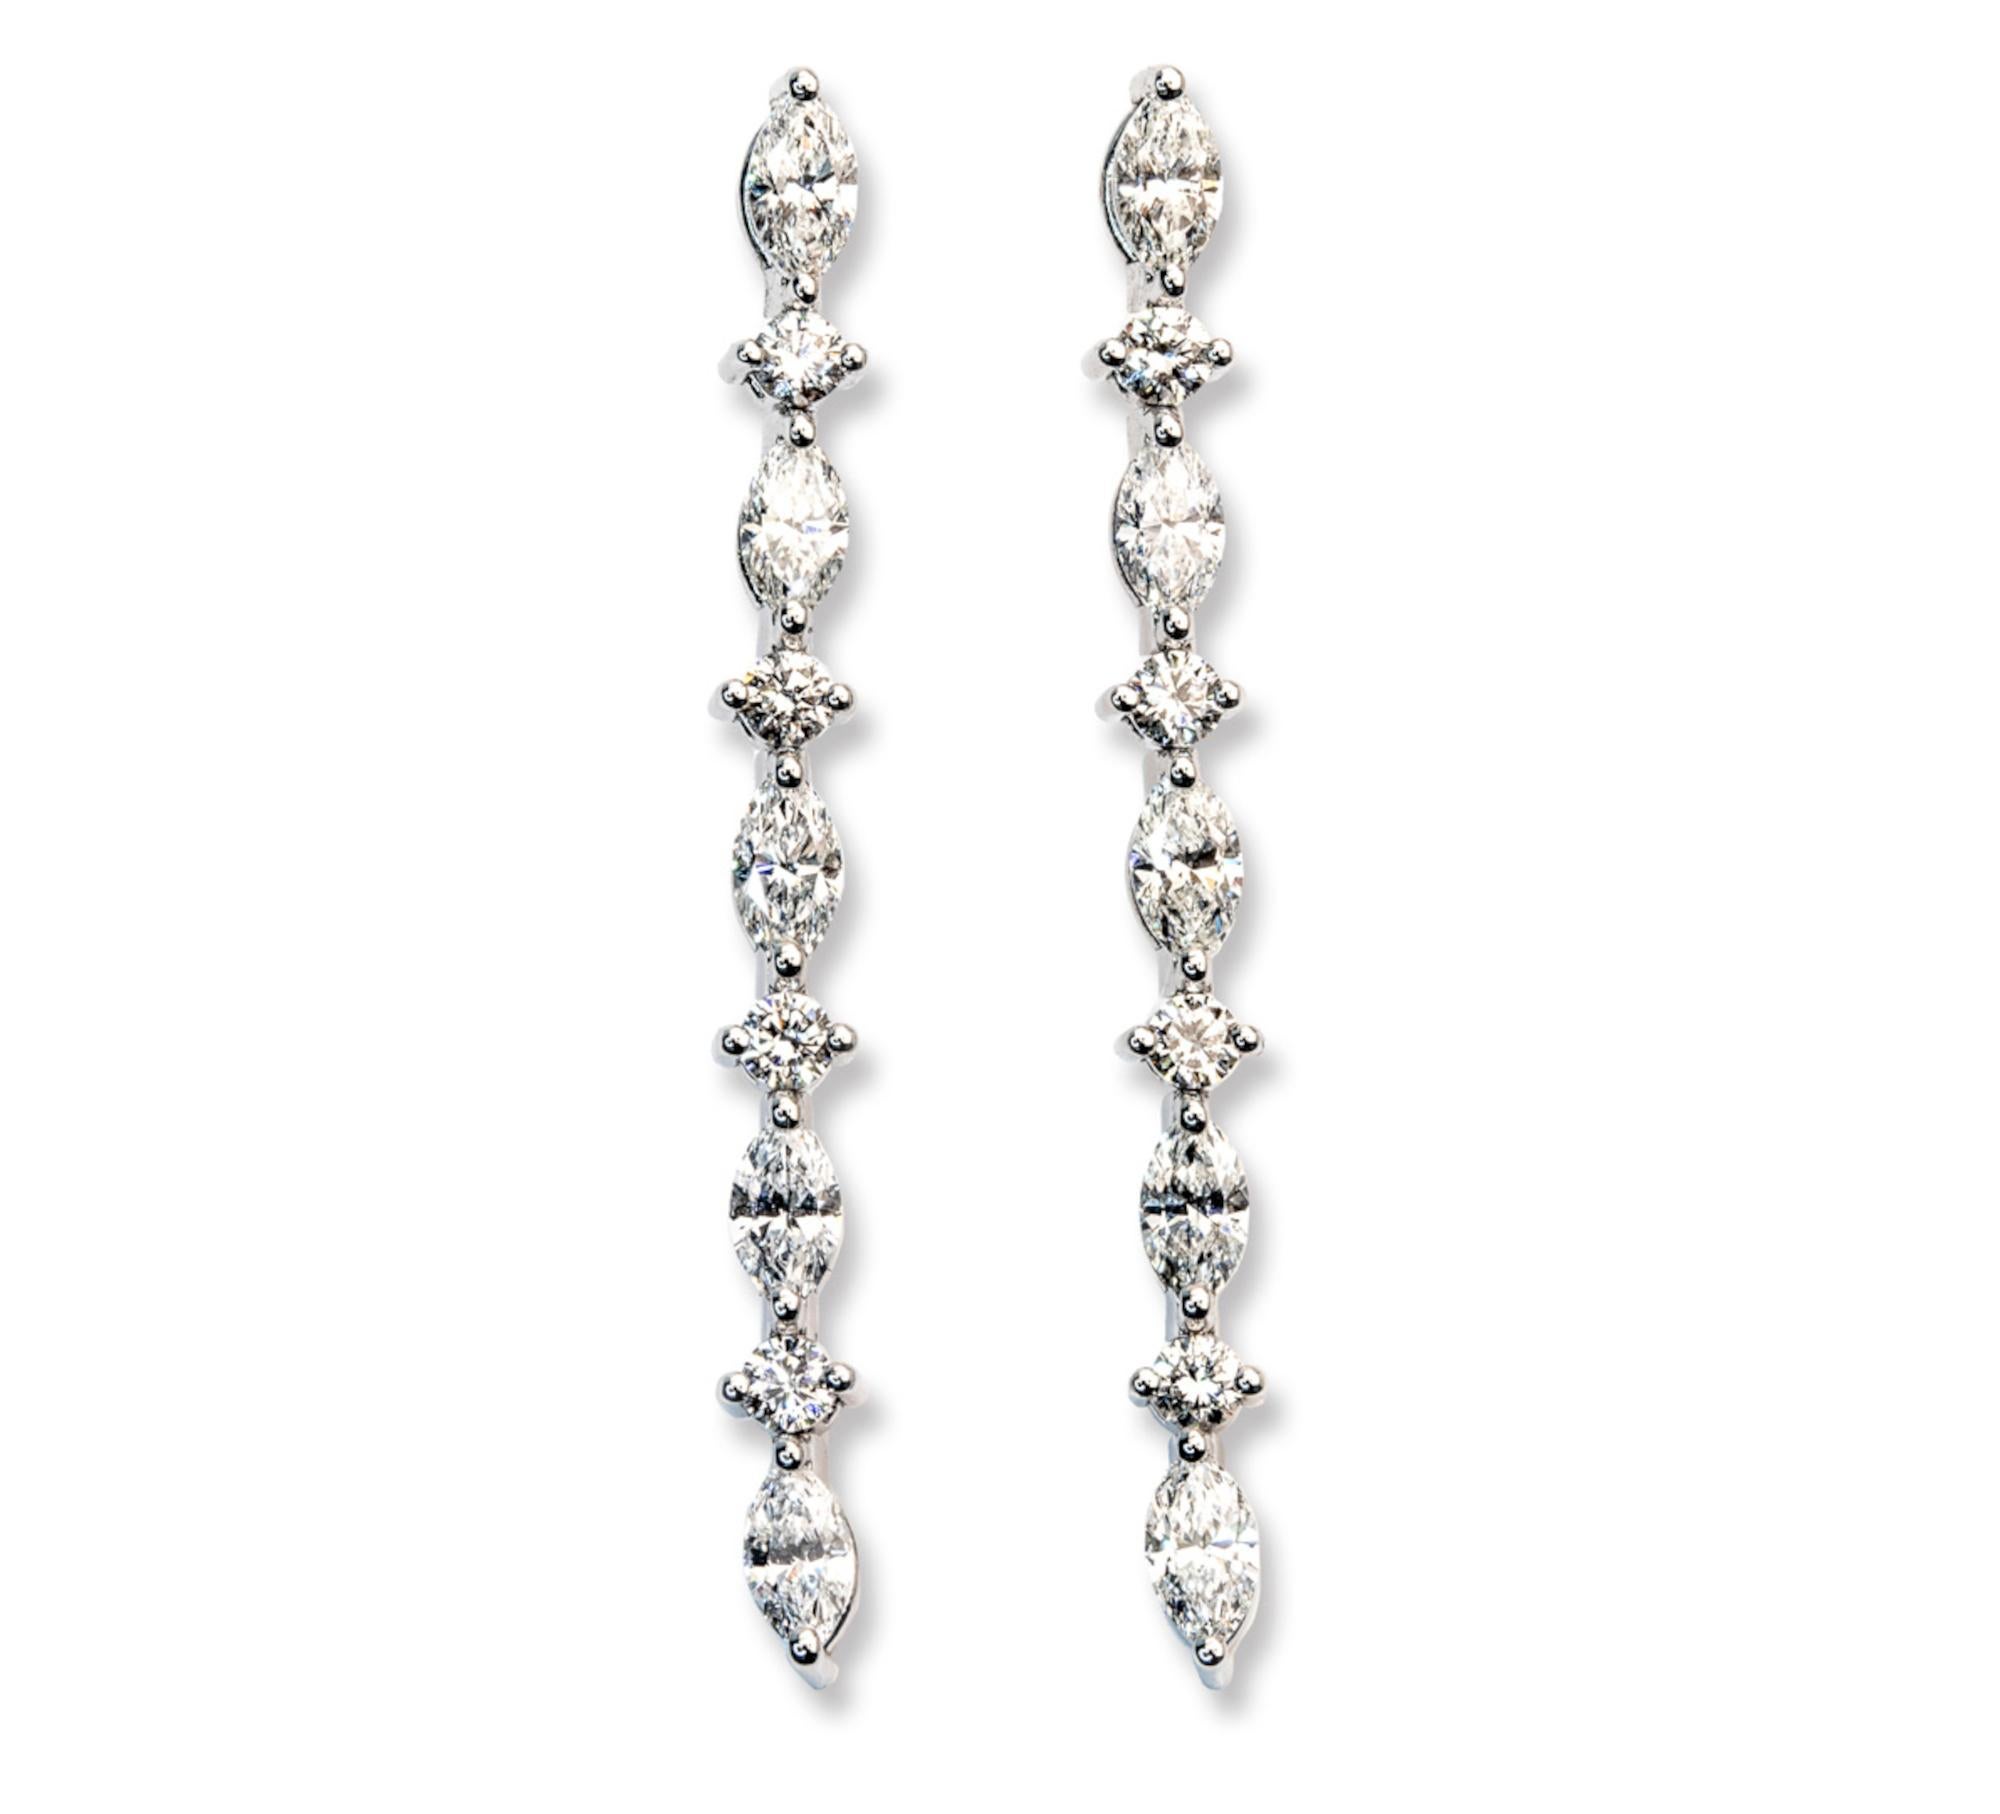 Lassen Sie sich von diesen bezaubernden 2 Karat E-F Color VS Round Cut Diamond Caravel Dangle Earrings verführen - ein wahres Zeugnis von Luxus und Raffinesse. Mit einem Gesamtgewicht von 2,05 Karat sind diese Ohrringe eine atemberaubende Ergänzung